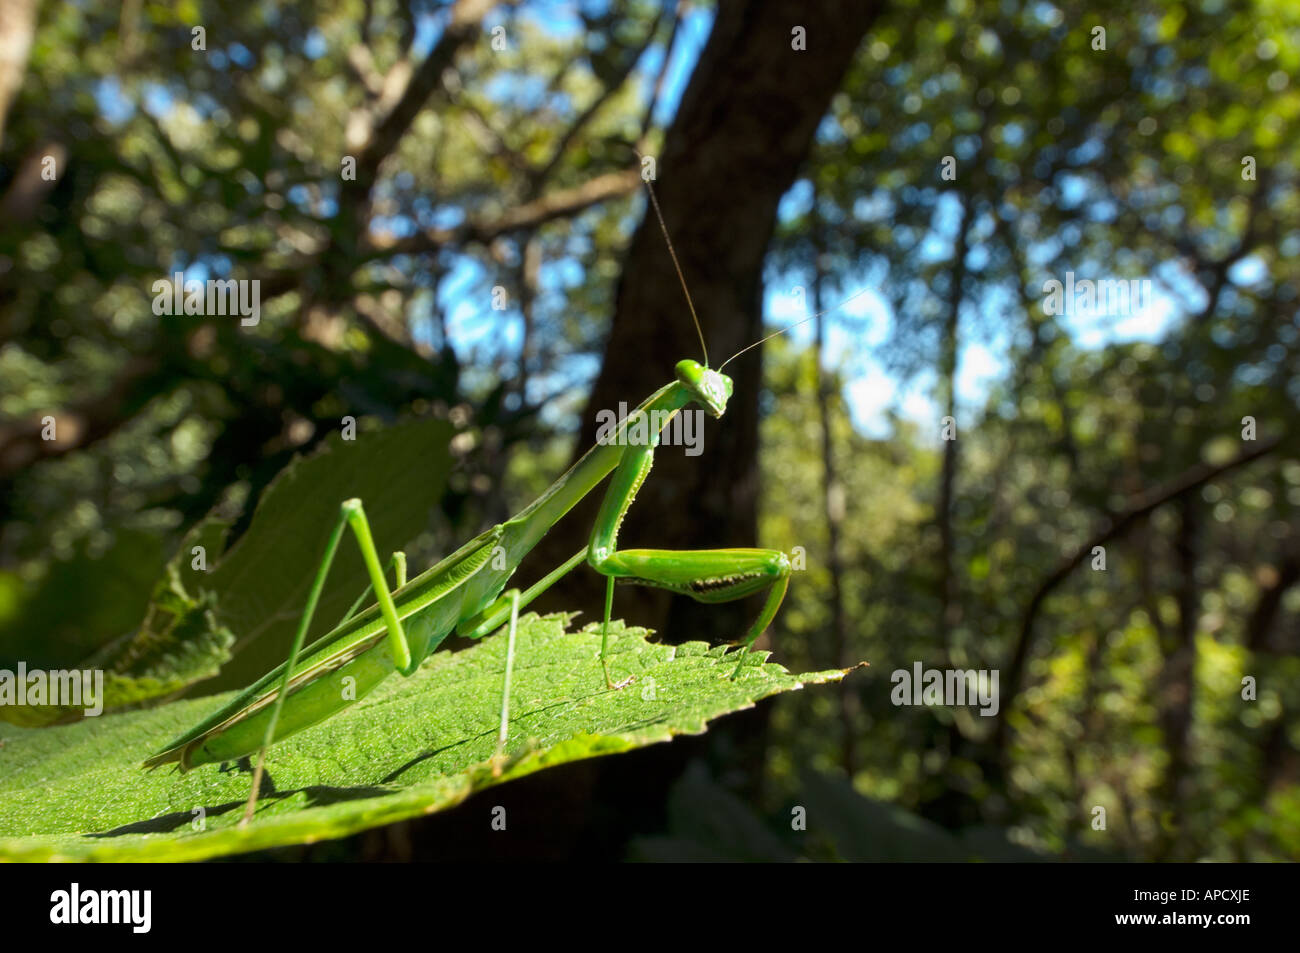 grünen wilden Praying Mantis Mantis Religiosa auf einem Blatt Tarnung im Dschungel Wald Bandipur Berg NEPAL Asien sitzen Stockfoto